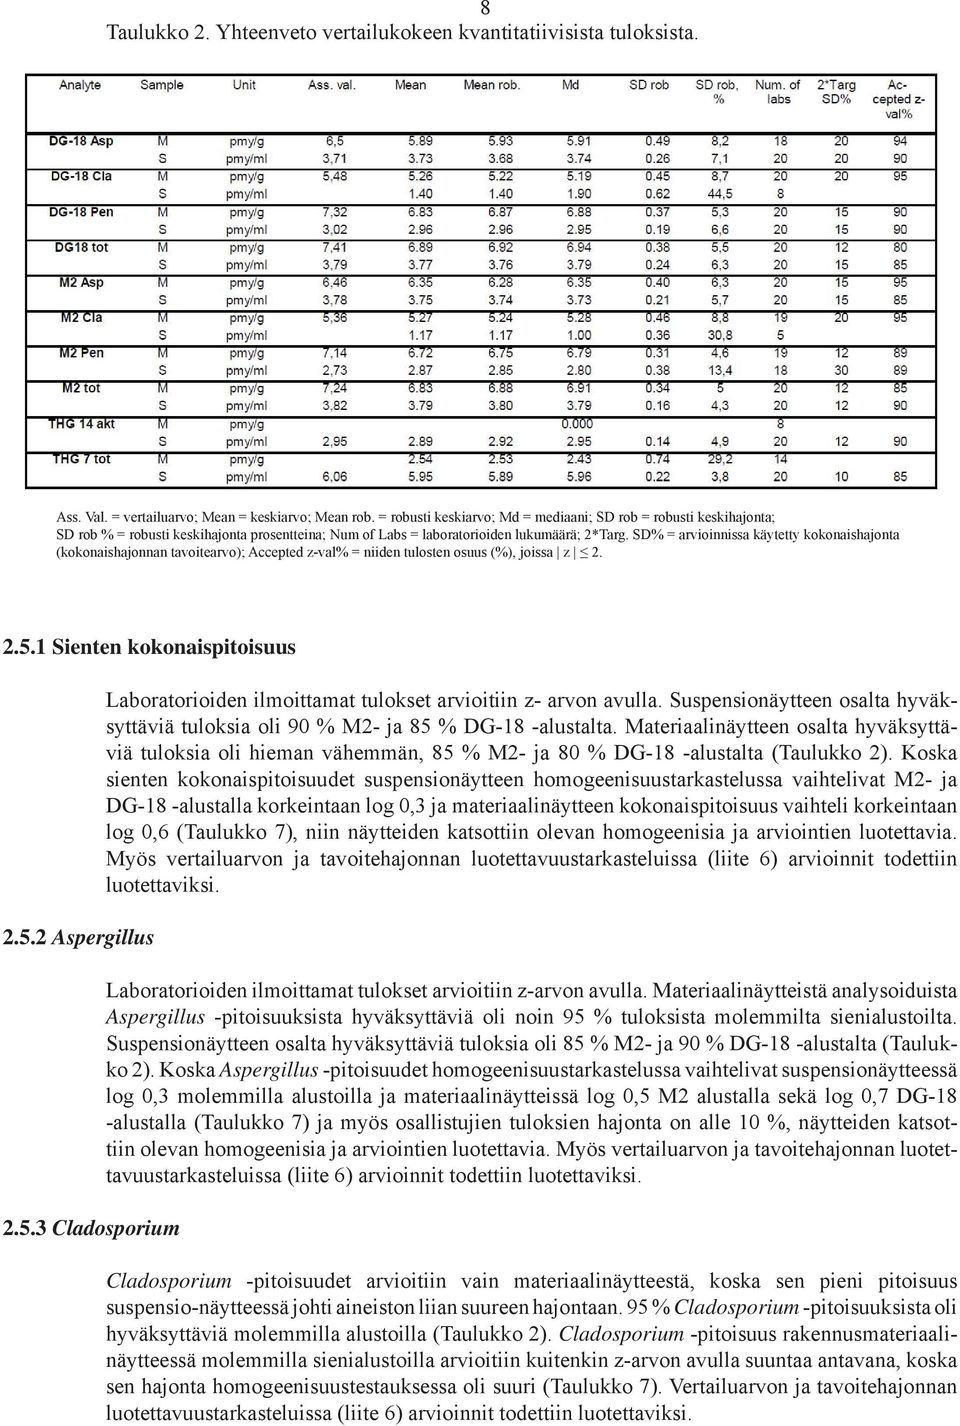 SD% = arvioinnissa käytetty kokonaishajonta (kokonaishajonnan tavoitearvo); Accepted z-val% = niiden tulosten osuus (%), joissa z... Sienten kokonaispitoisuus.. Aspergillus.